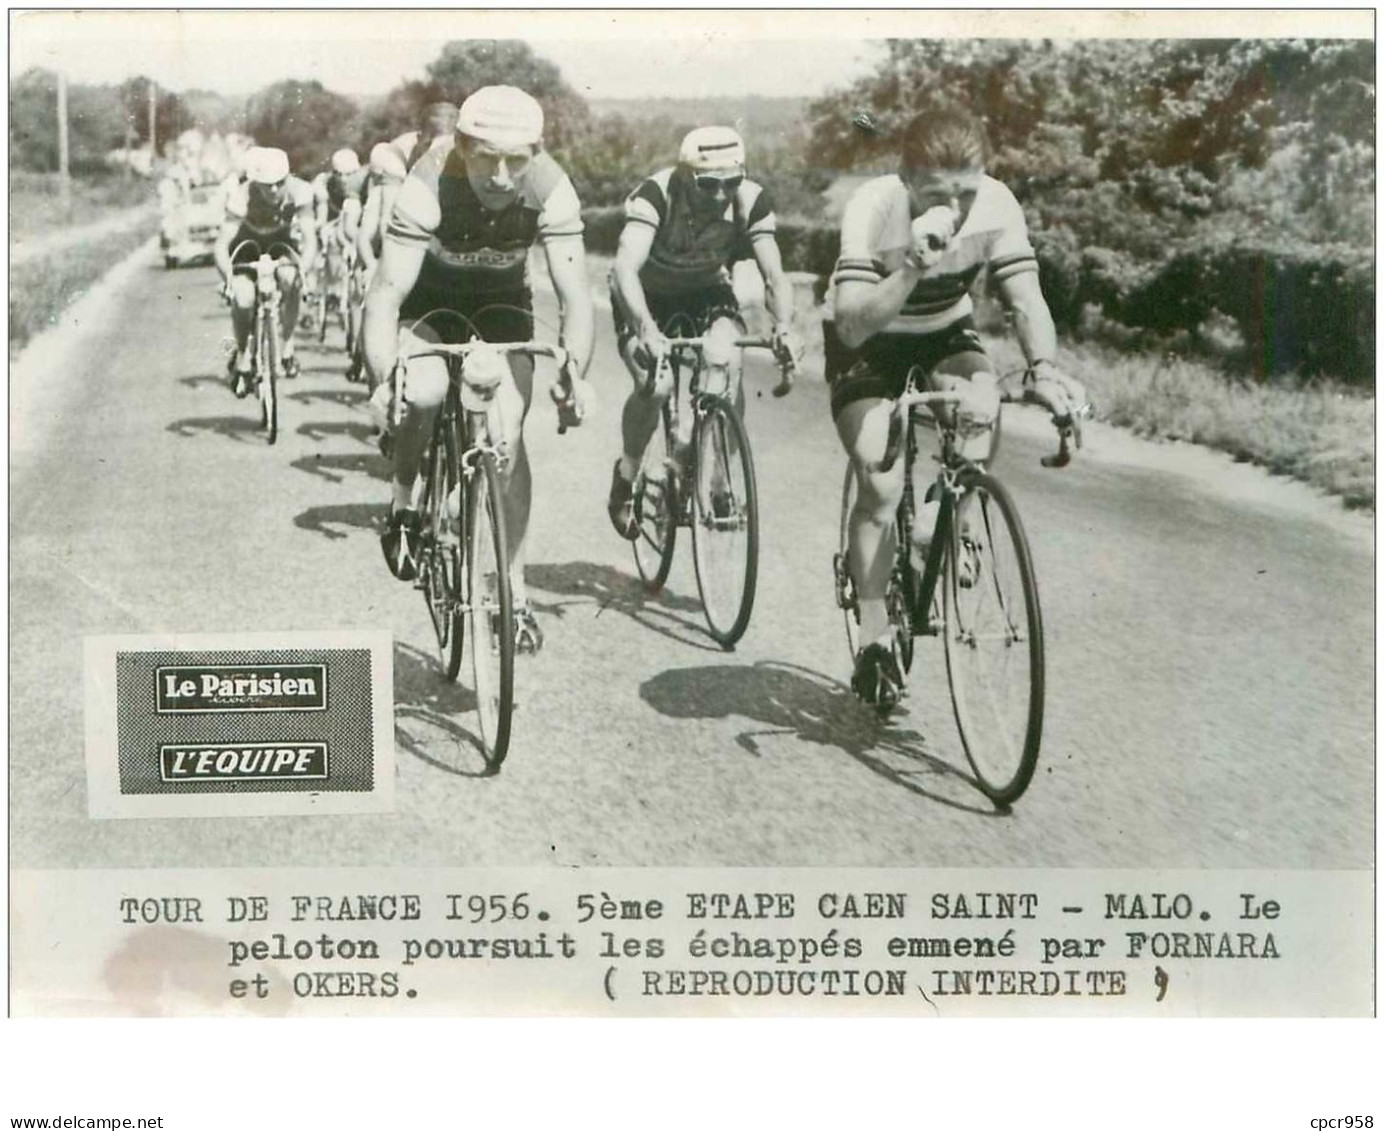 PHOTO DE PRESSE ORIGINALE TOUR DE FRANCE 1956.20X15.5eme ETAPE CAEN ST MALO.LE PELOTON ...FORNARA ET OKERS.n°18662 - Cyclisme